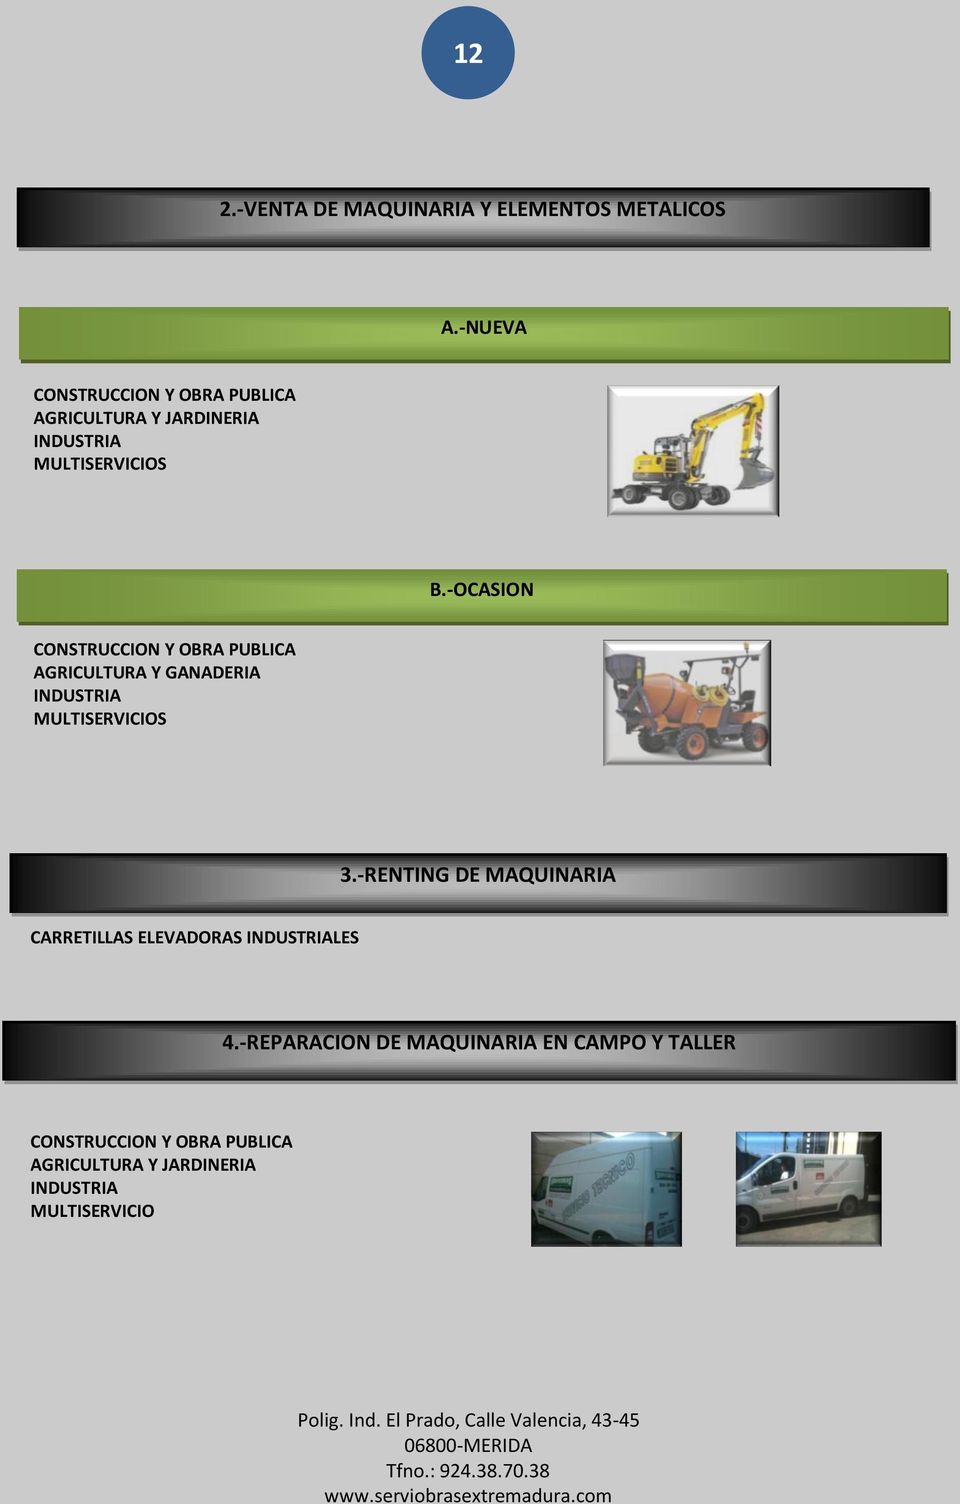 -OCASION CONSTRUCCION Y OBRA PUBLICA AGRICULTURA Y GANADERIA INDUSTRIA MULTISERVICIOS 3.